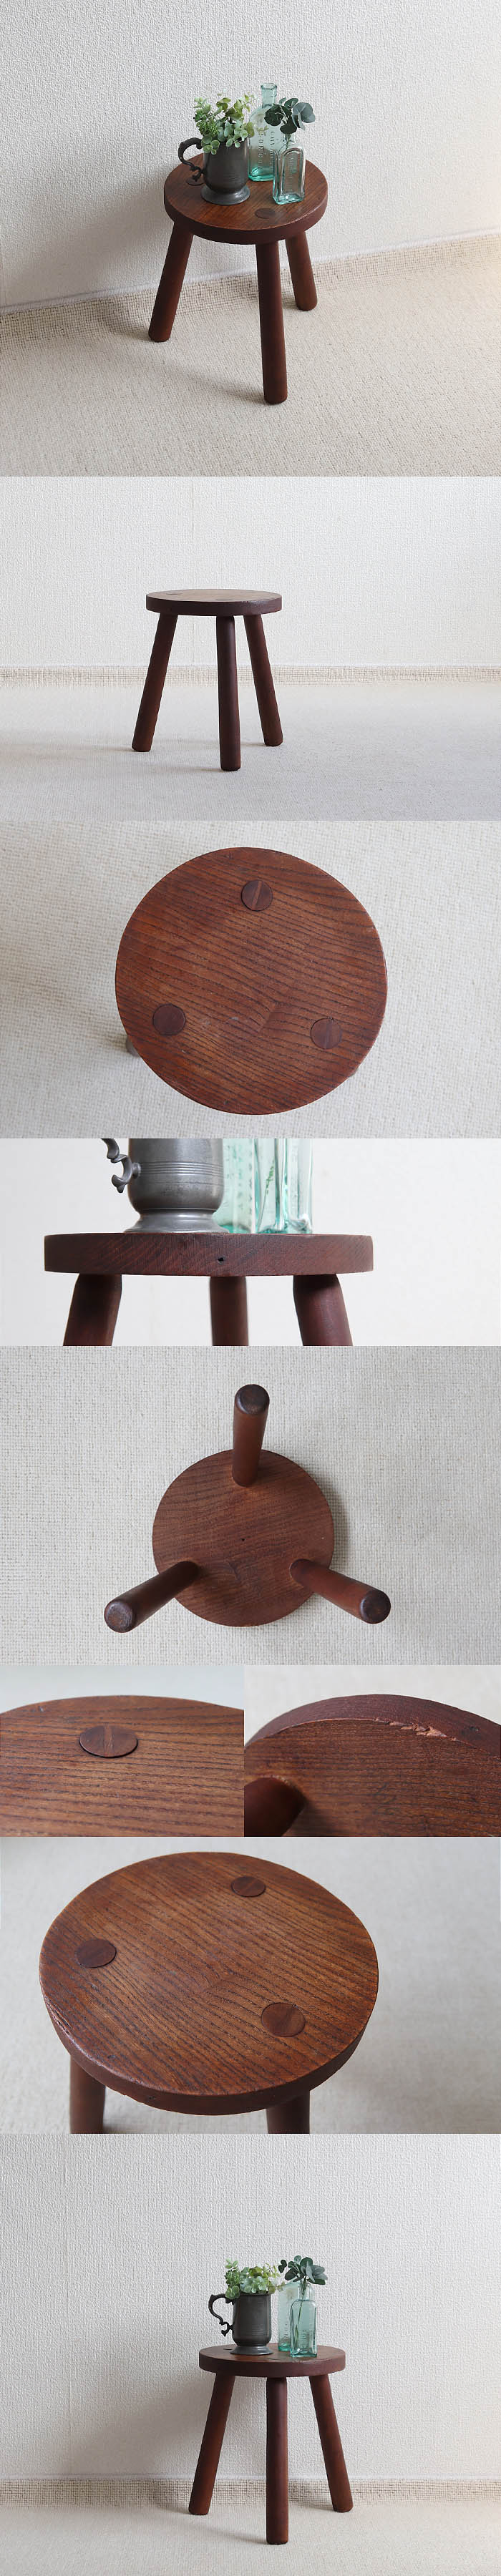 イギリス アンティーク 丸スツール 木製椅子 飾り台 トライポッド 家具 